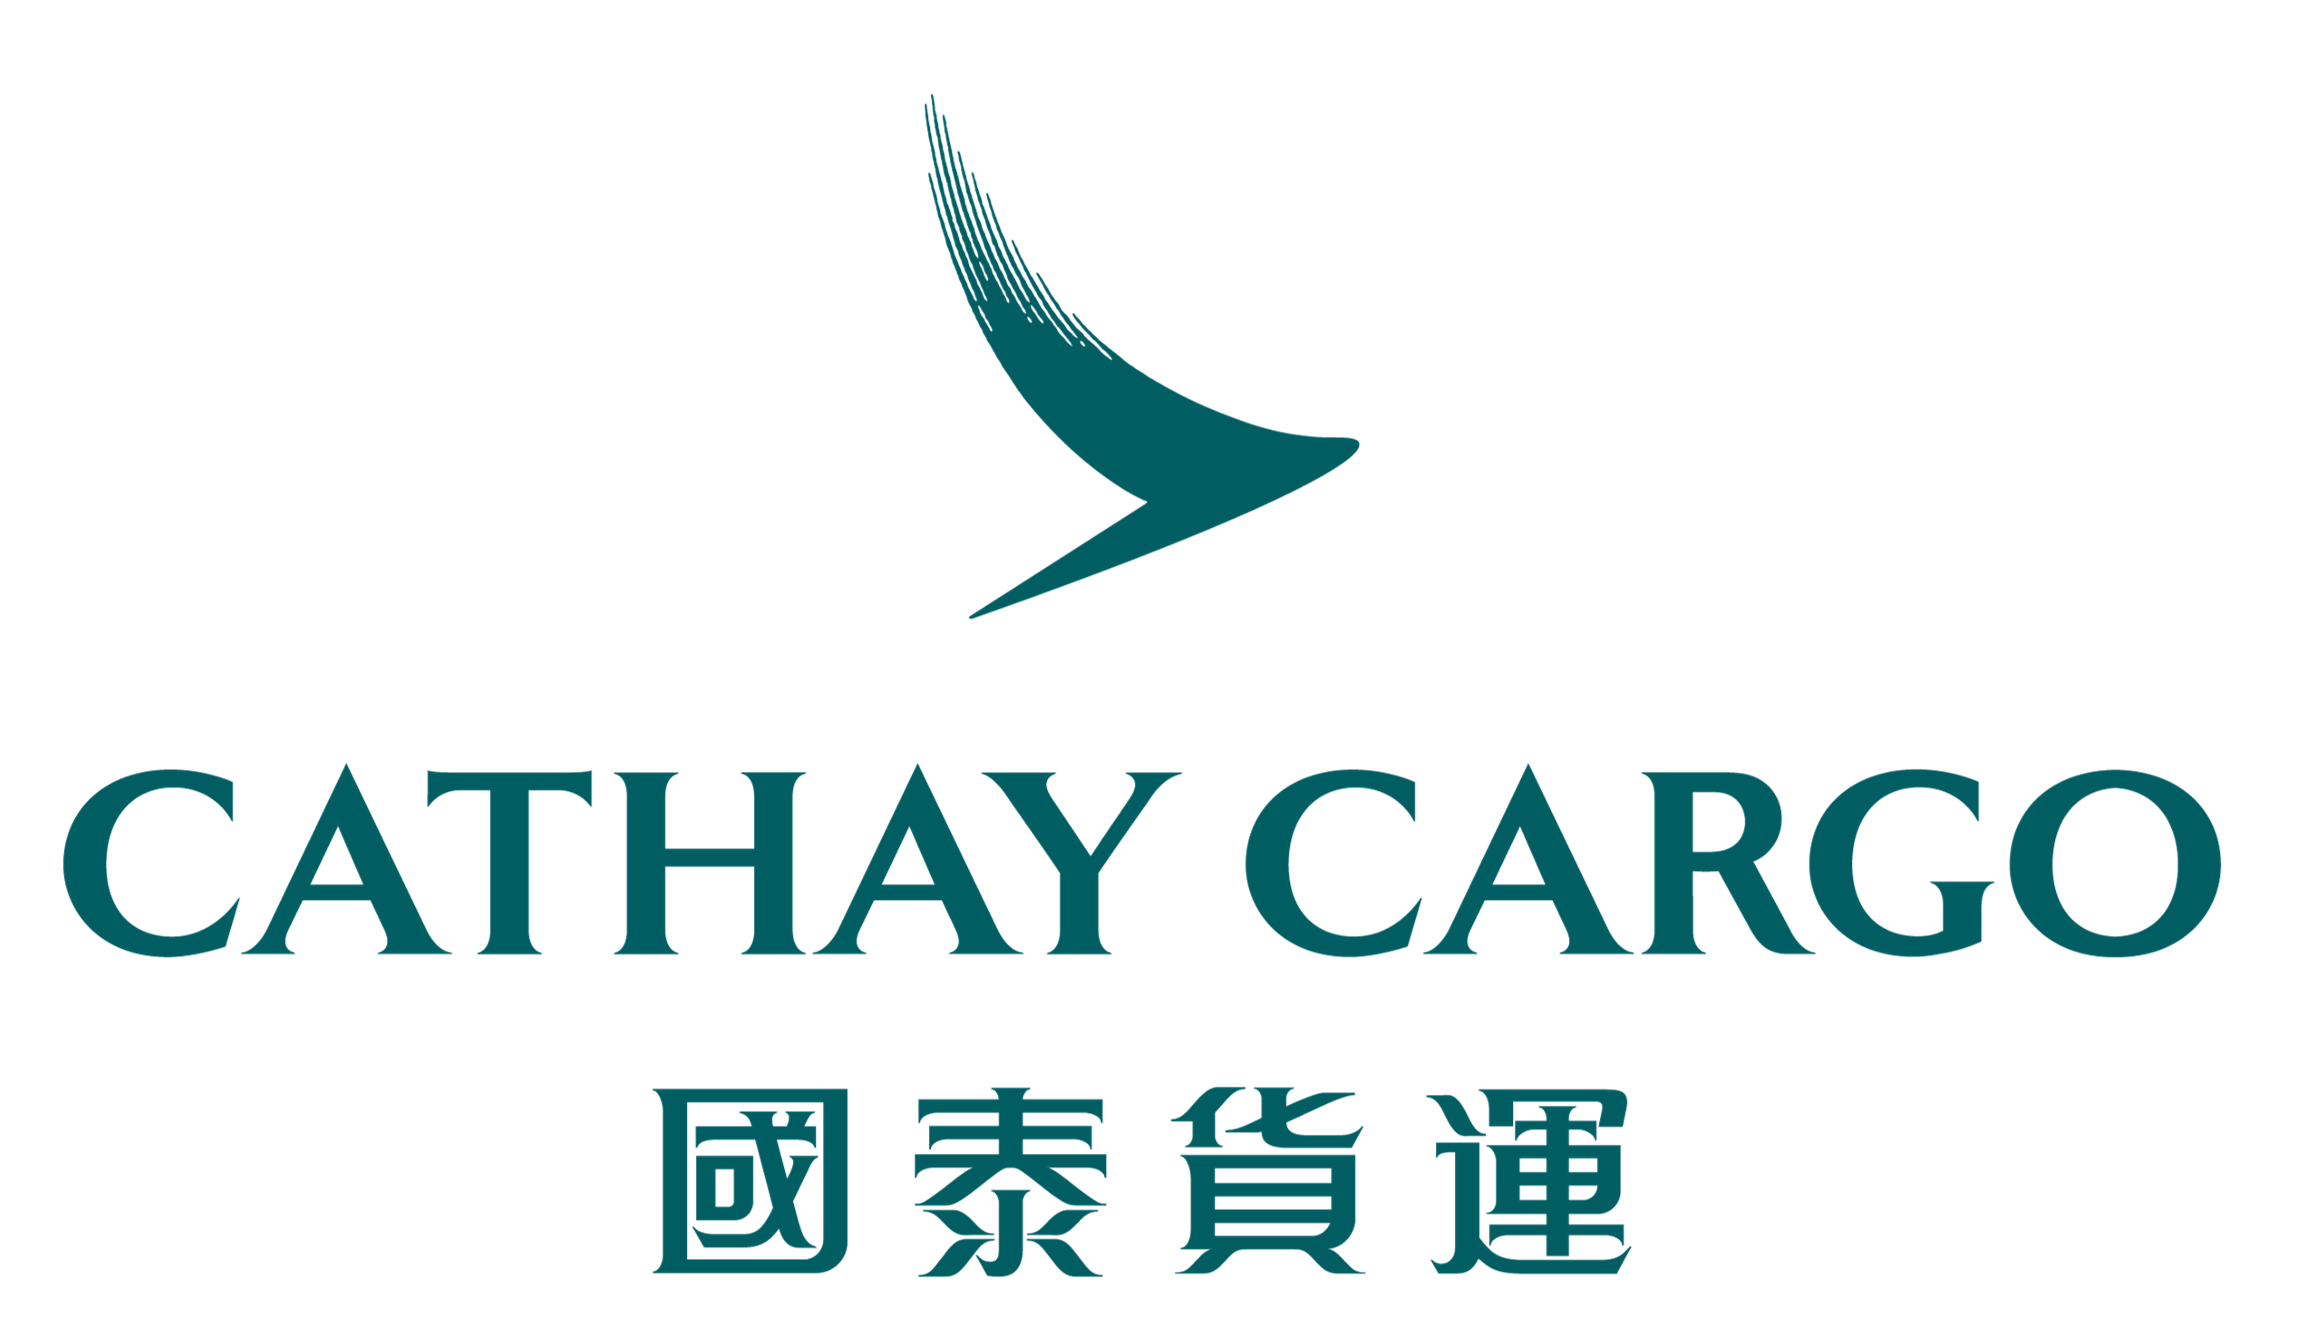 国泰航空有限公司上海代表处